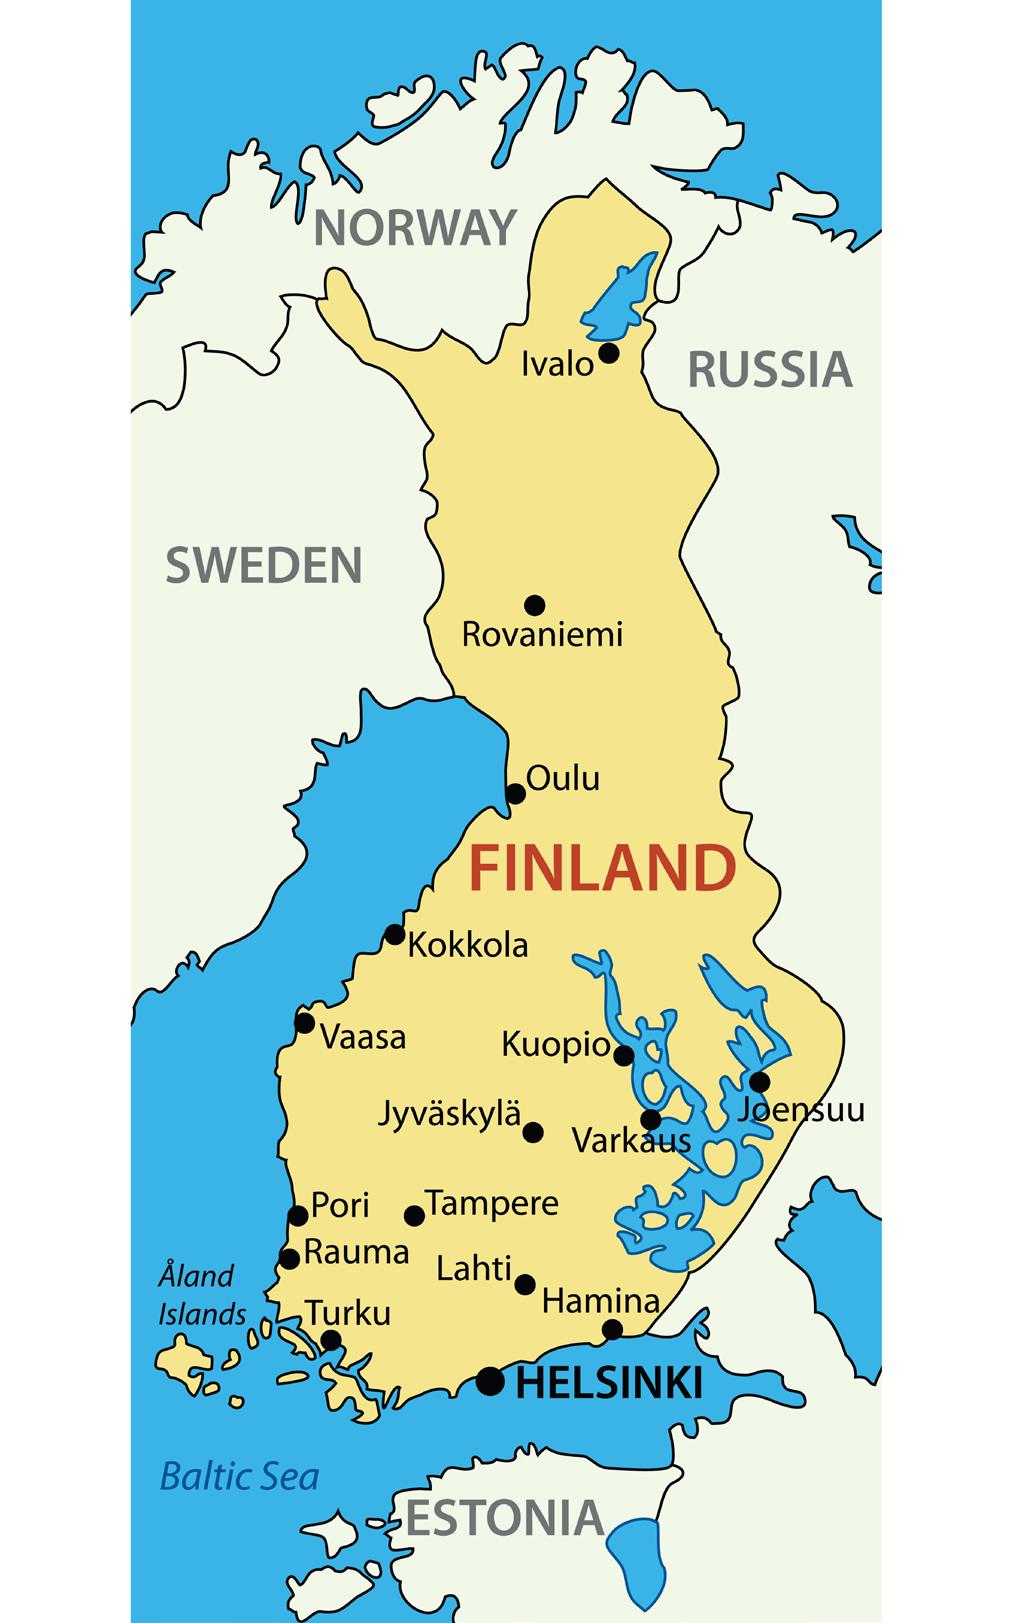 FINSKA OPĆI PODACI O TRŽIŠTU Republika Finska je nordijska država u sjeveroistočnoj Europi, okružena Baltičkim morem na jugozapadu, Finskim zaljevom na jugoistoku i Botničkim zaljevom na zapadu.